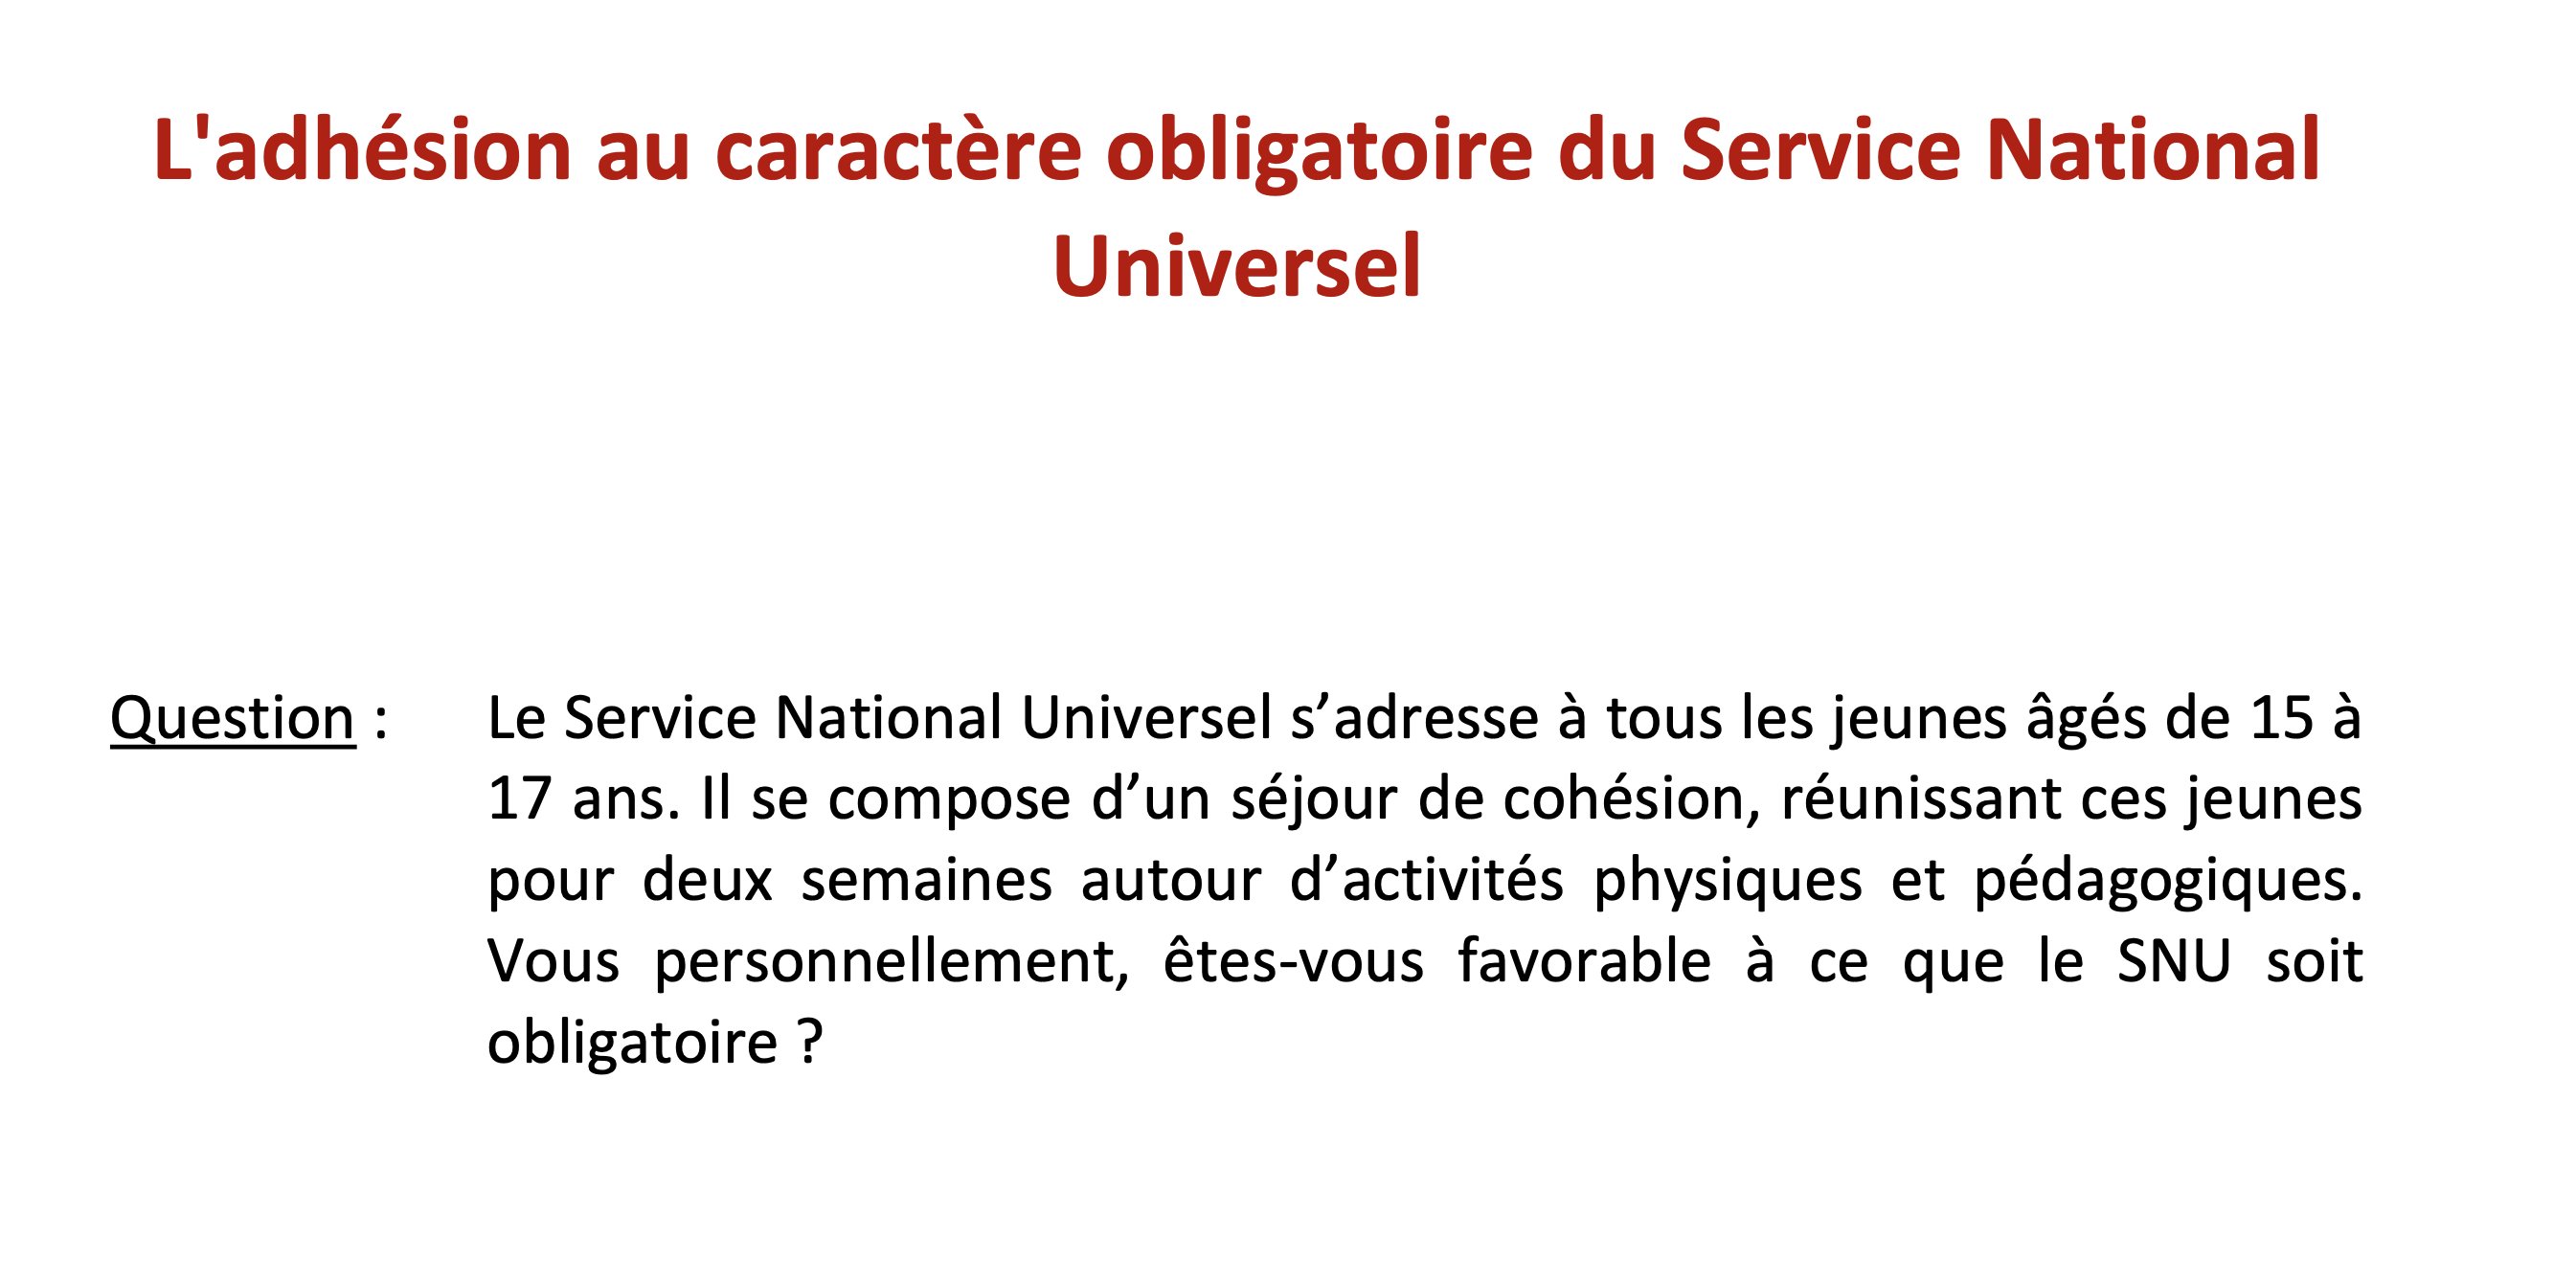 Le Service National Universel (SNU) recrute dans les lycées - Page 16 FqxstLHWYAIaujy?format=jpg&name=4096x4096